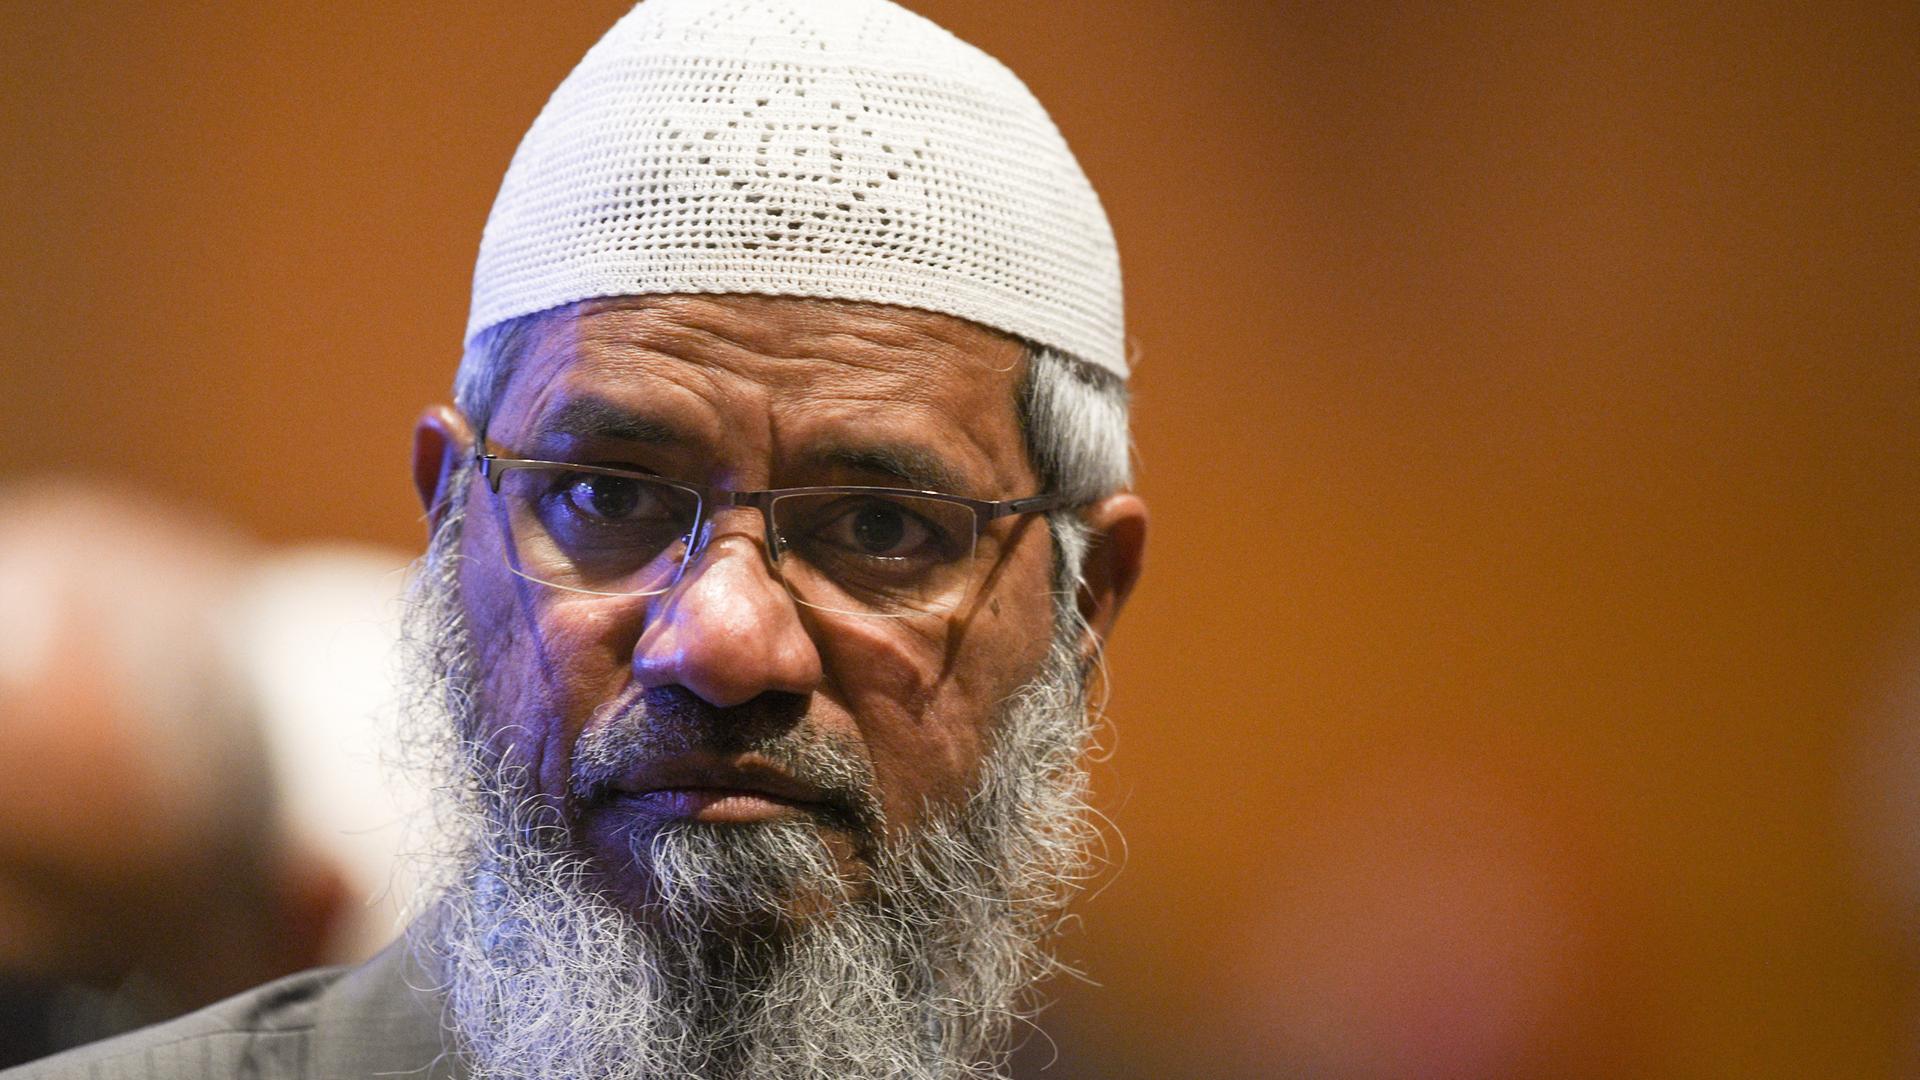 Zu sehen ist der aus Indien stammende umstrittene muslimische Fernsehprediger Zakir Naik. Er trägt Bart und eine Brille und steht vor einem farbigen Hintergrund. Aufgenommen wurde das Bild am 19. Dezember 2019.
(Photo by Mohd RASFAN / AFP)